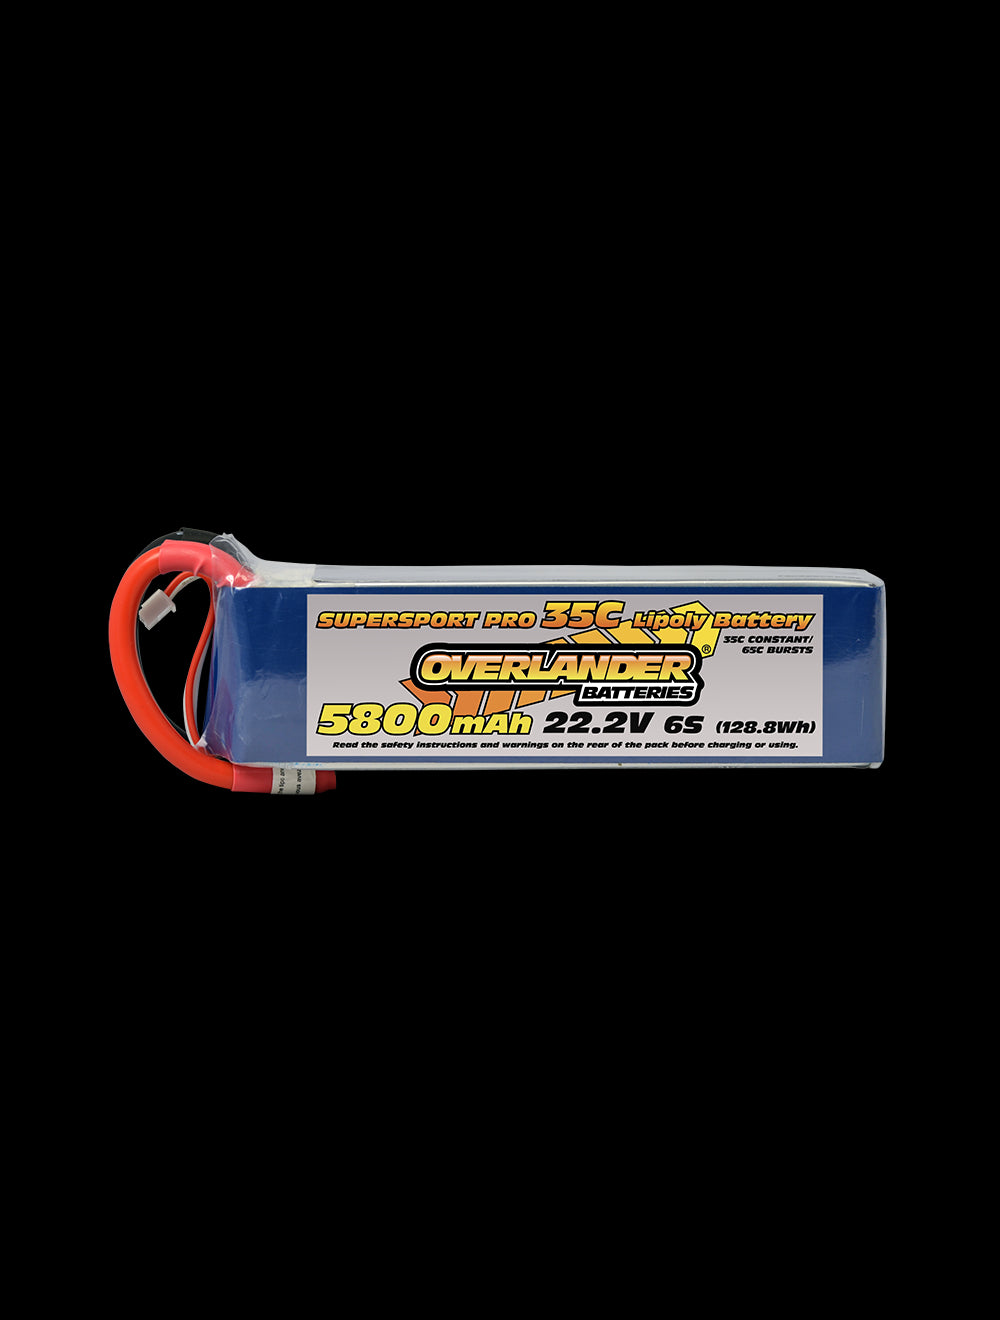 Overlander 5800mAh 22.2V 6S 35C Supersport Pro LiPo Battery - No Connector 3116